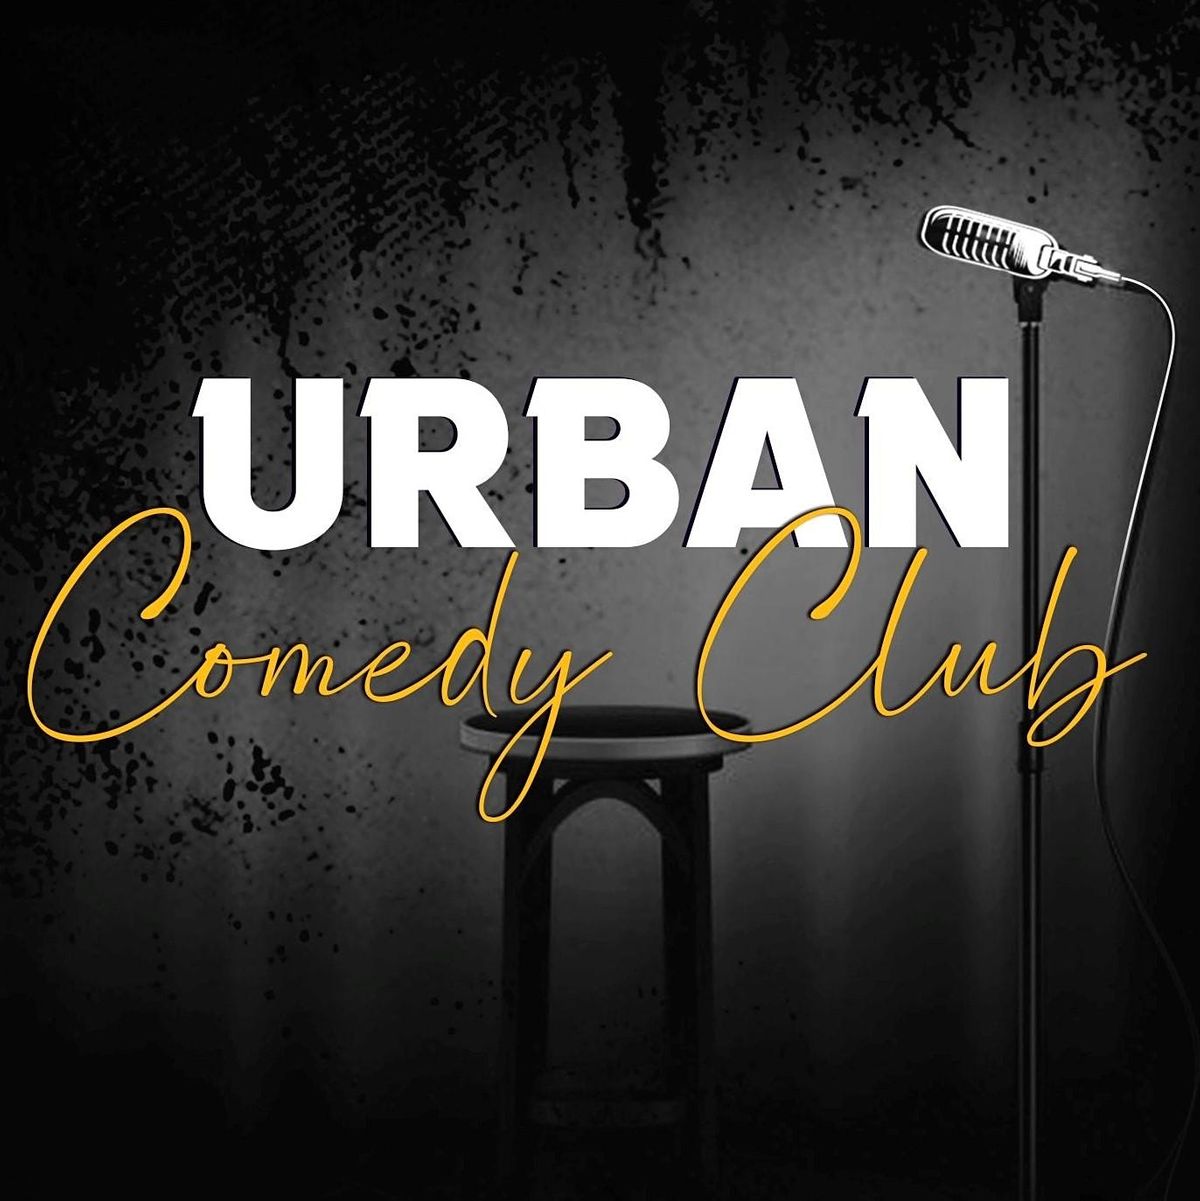 Urban comedy club